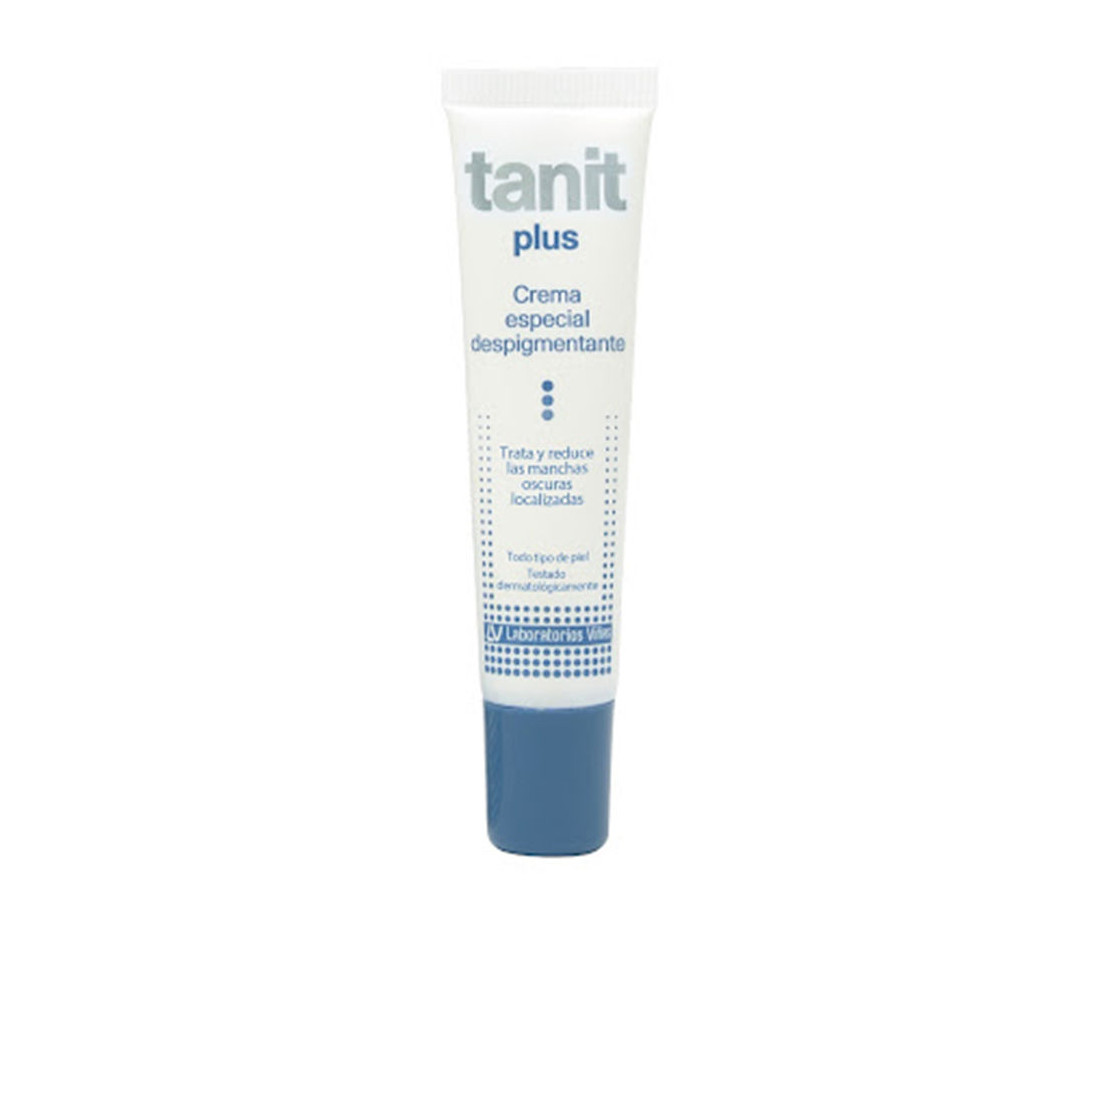 TANIT PLUS crema especial despigmentante 15 ml